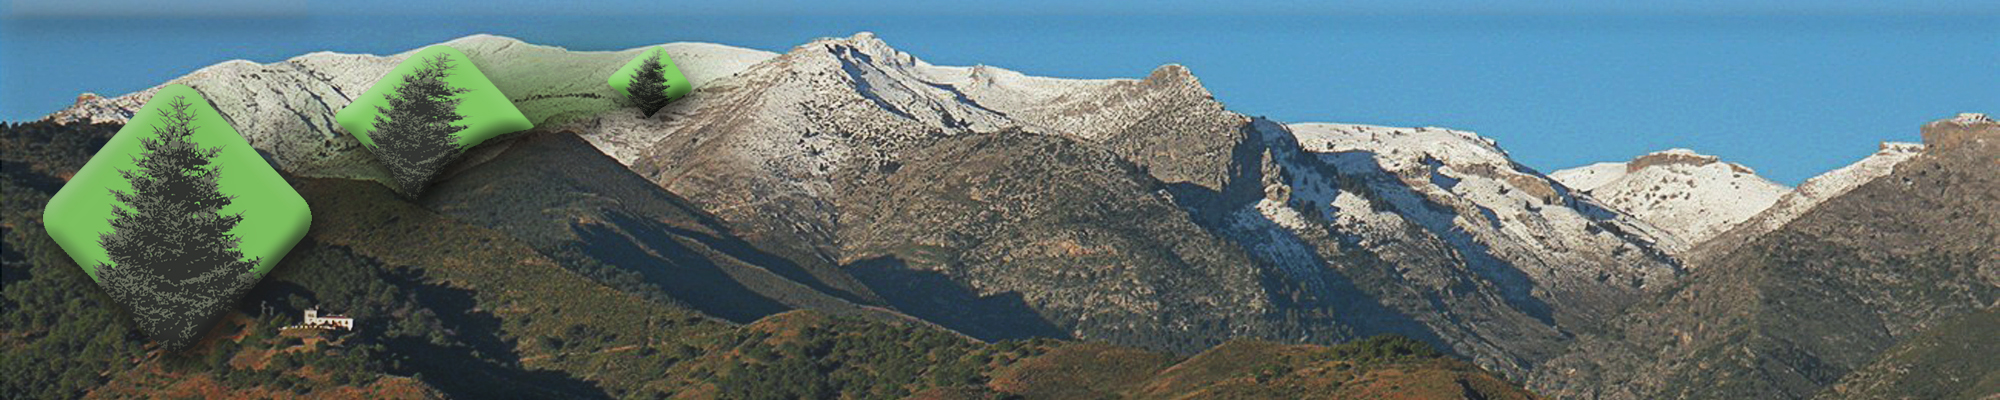 Parque Nacional Sierra de las Nieves